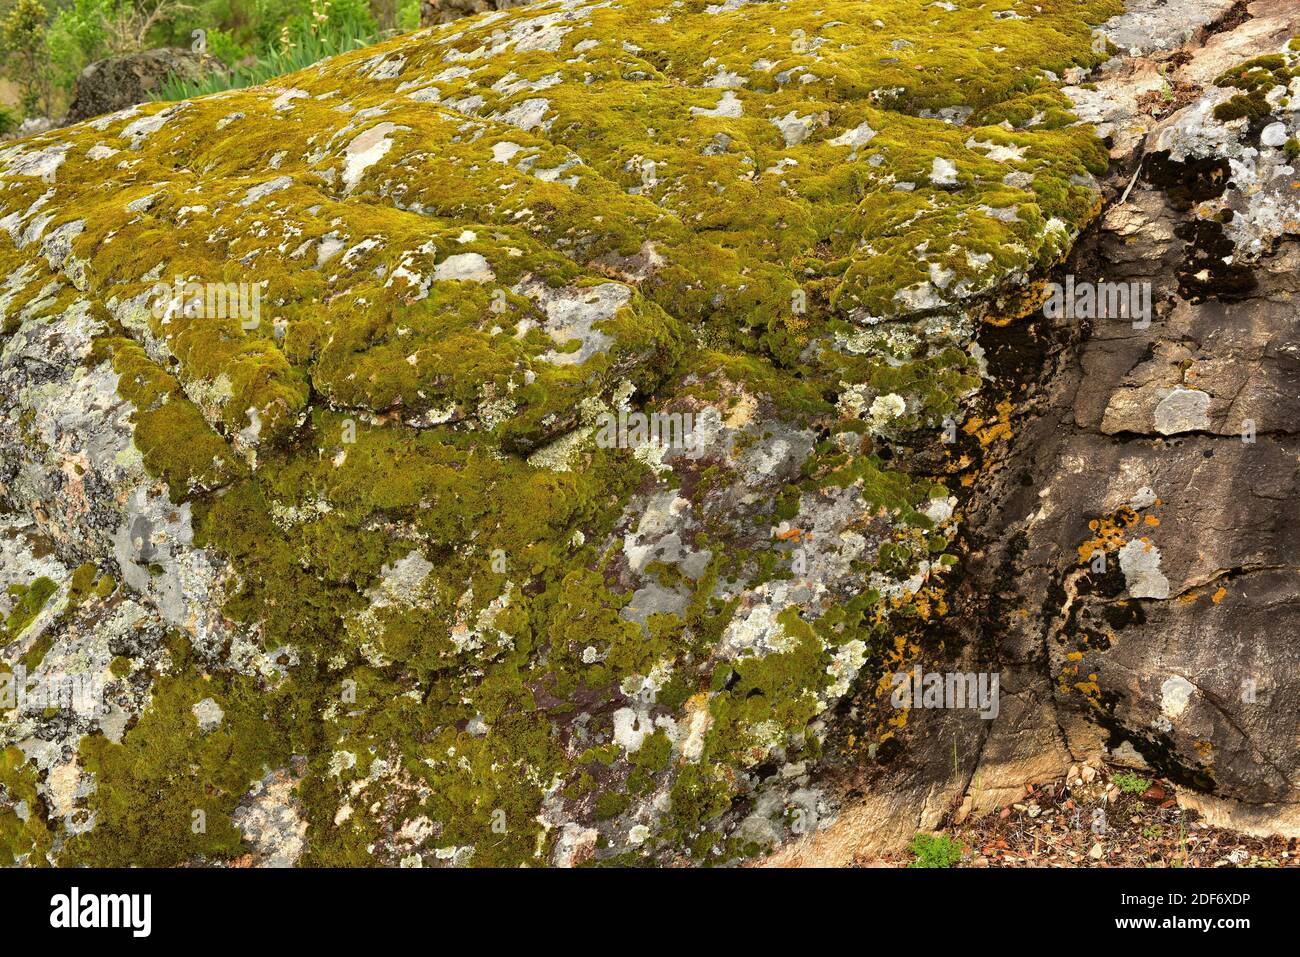 La grimmia a punta di capelli (Grimmia trichophylla) è un muschio cuscino. Questa foto è stata scattata nel Parco Naturale di Arribes del Duero, provincia di Zamora, Foto Stock